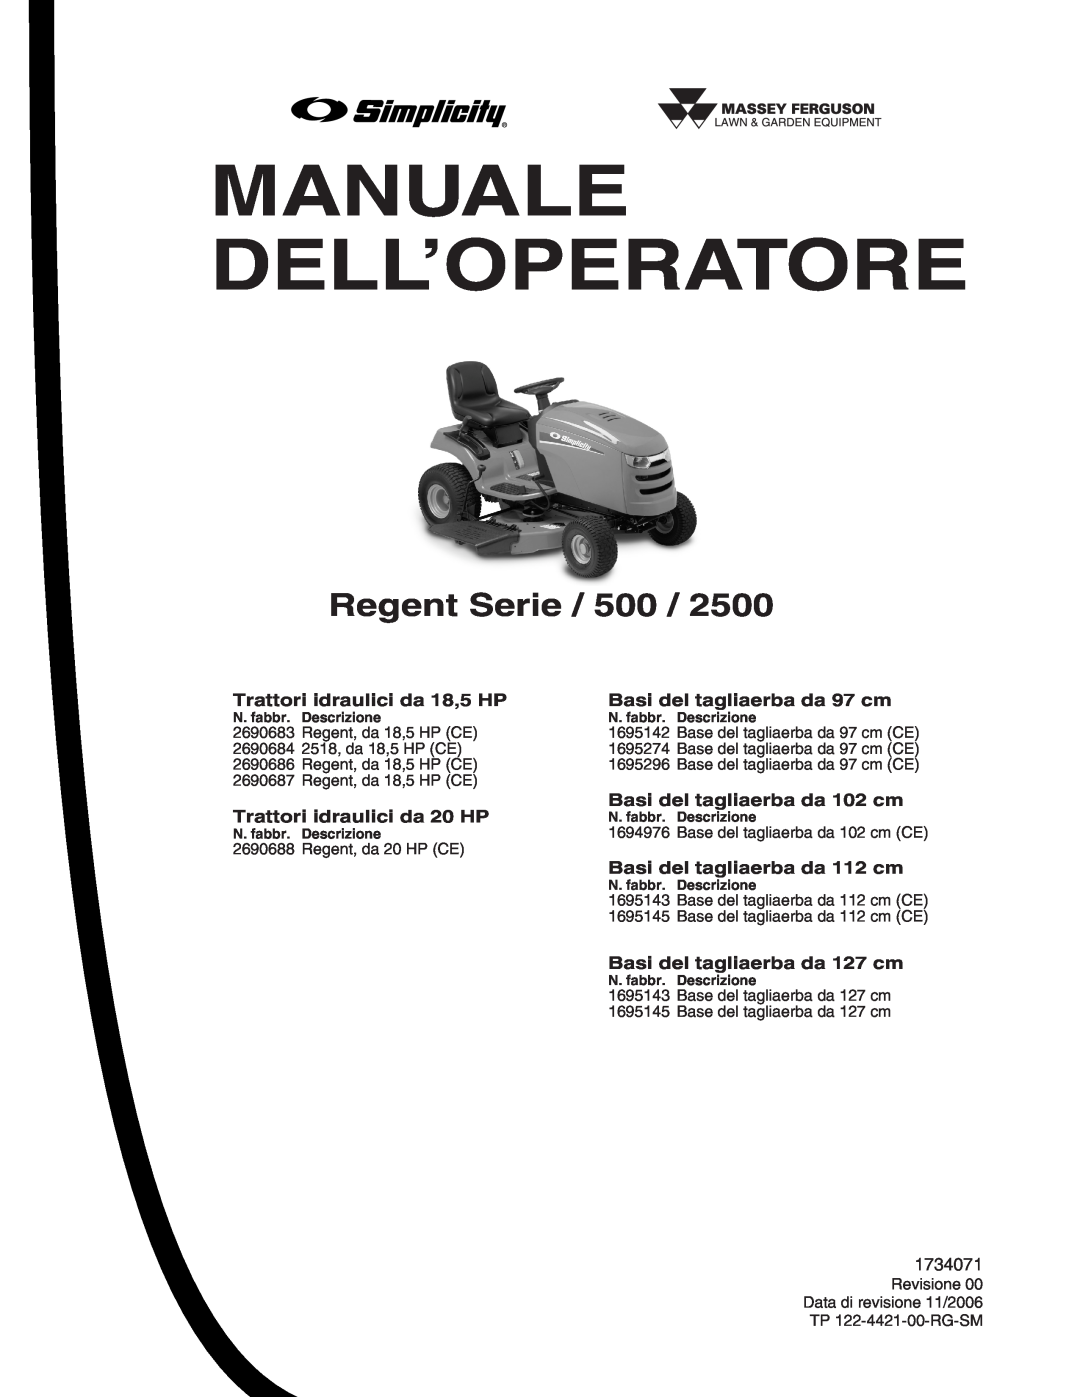 Briggs & Stratton Printer instruction sheet Regent Serie / 500, Manuale Dell’Operatore 